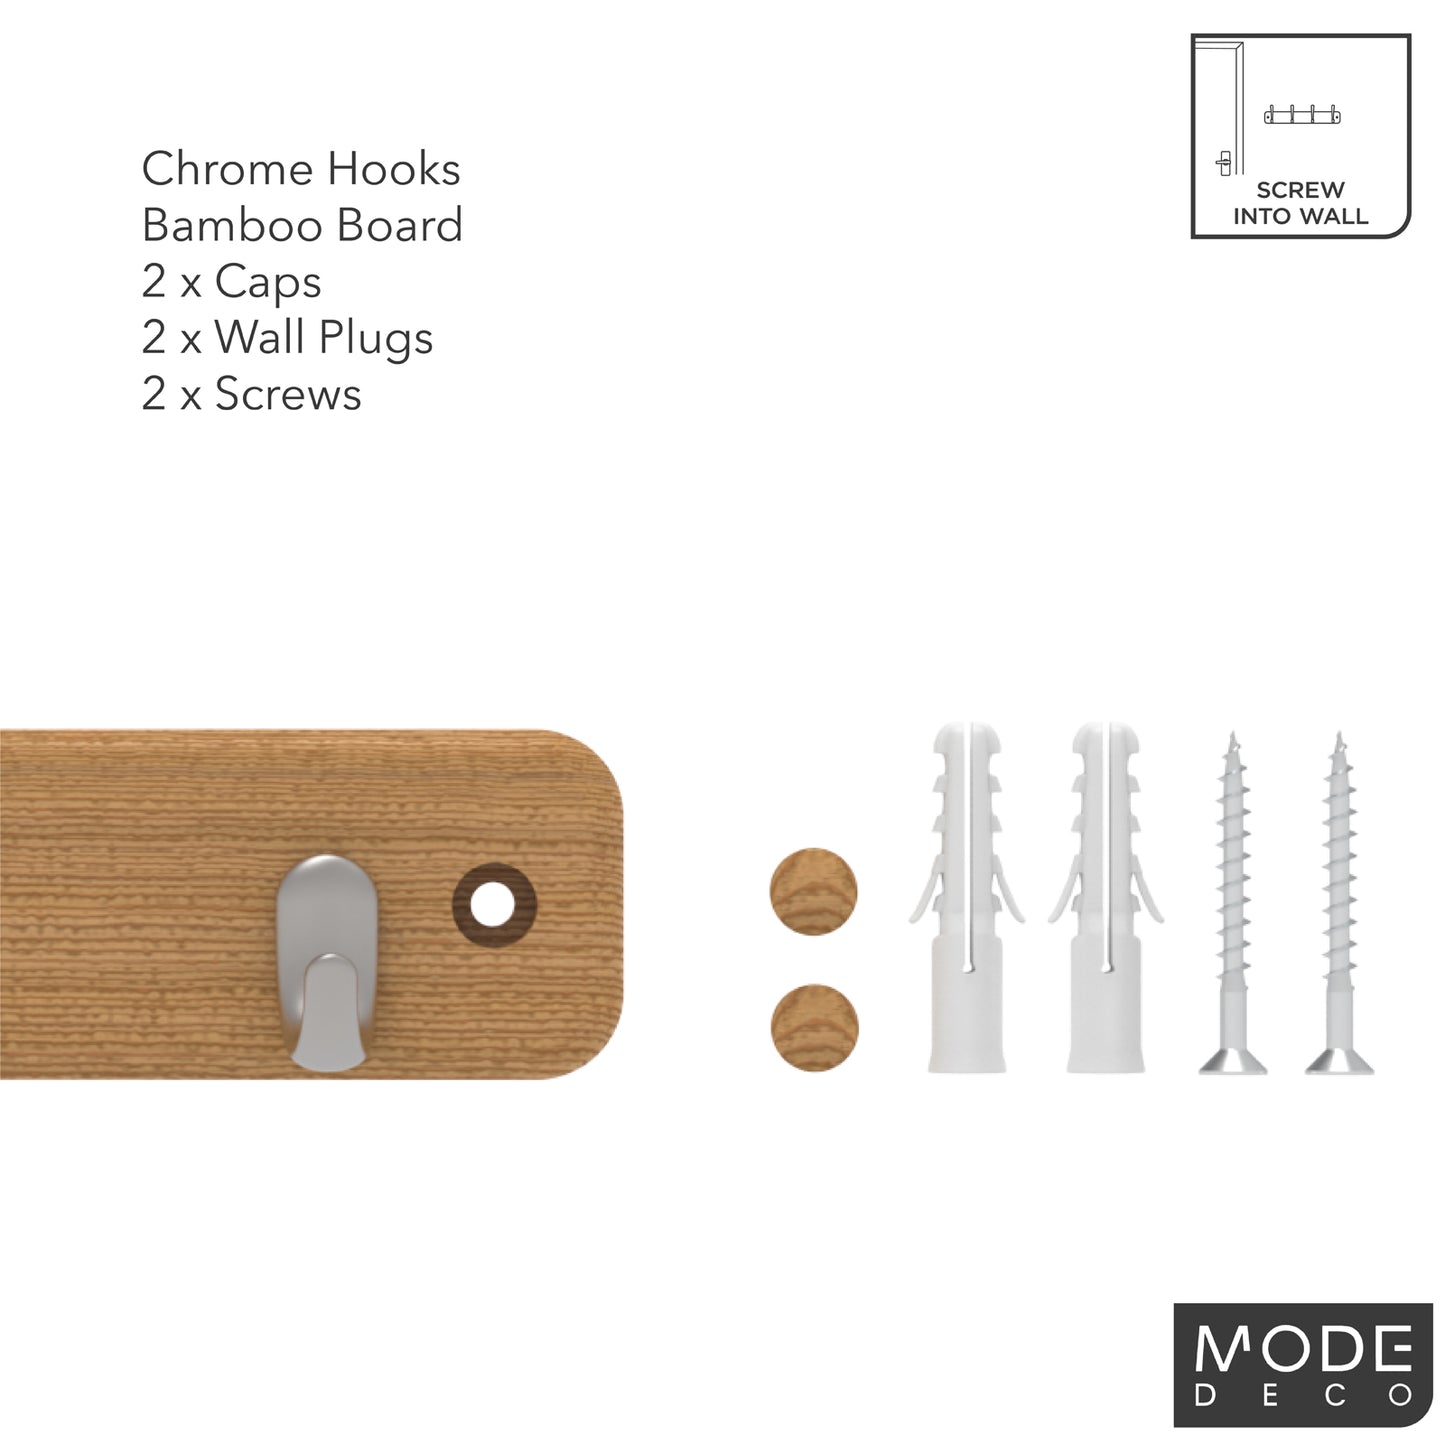 4 Chrome Hooks on Bamboo Board Key Rack